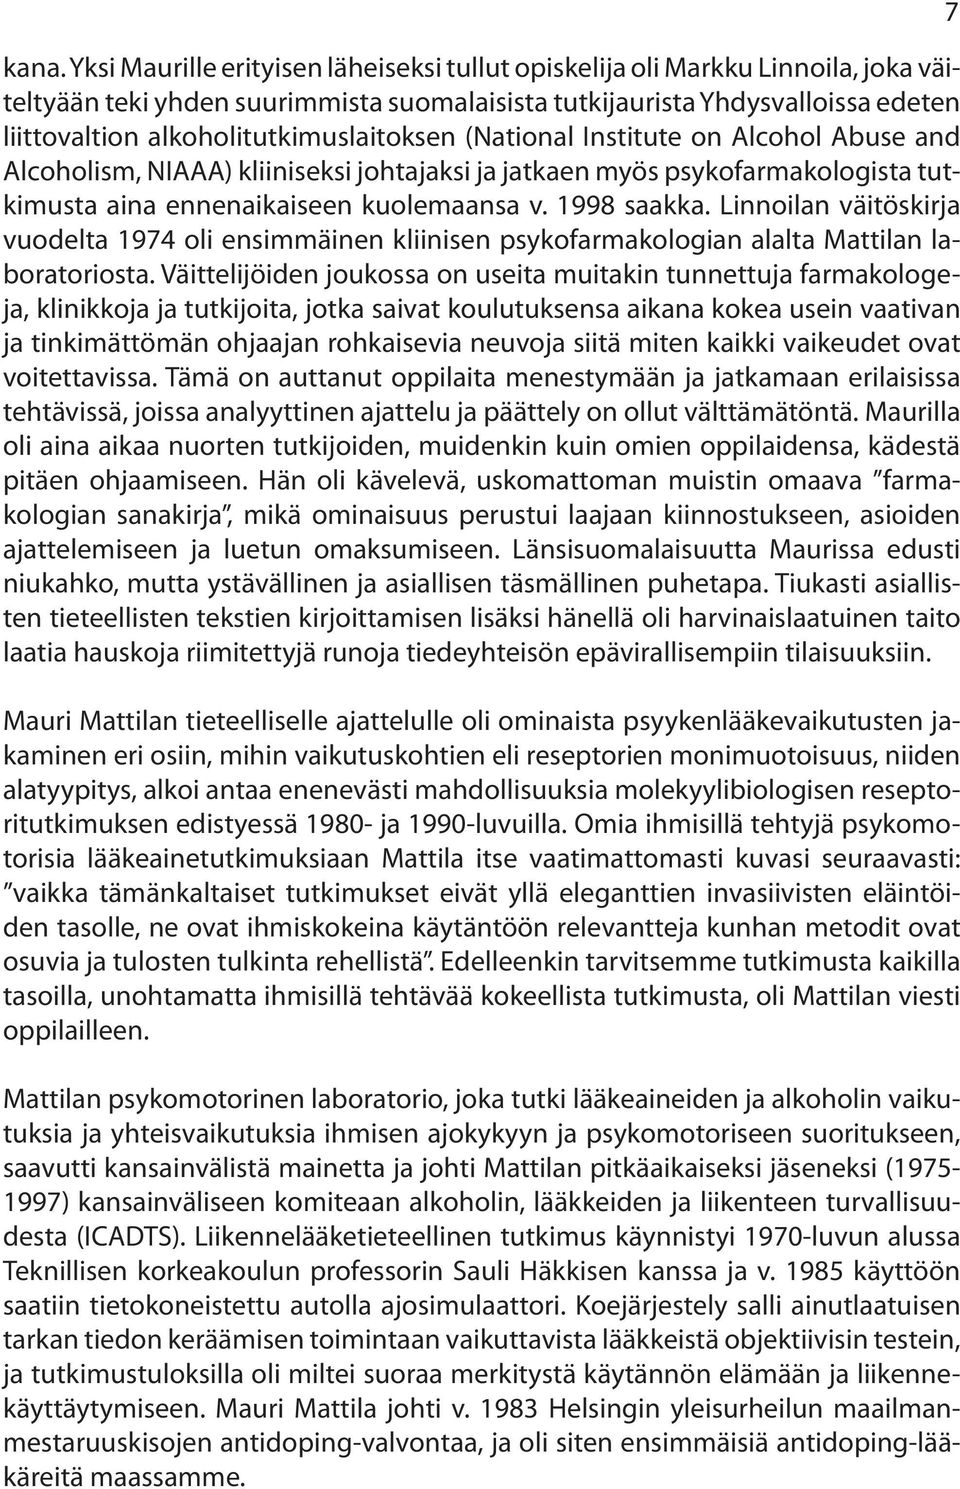 1998 saakka. Linnoilan väitöskirja vuodelta 1974 oli ensimmäinen kliinisen psykofarmakologian alalta Mattilan laboratoriosta.